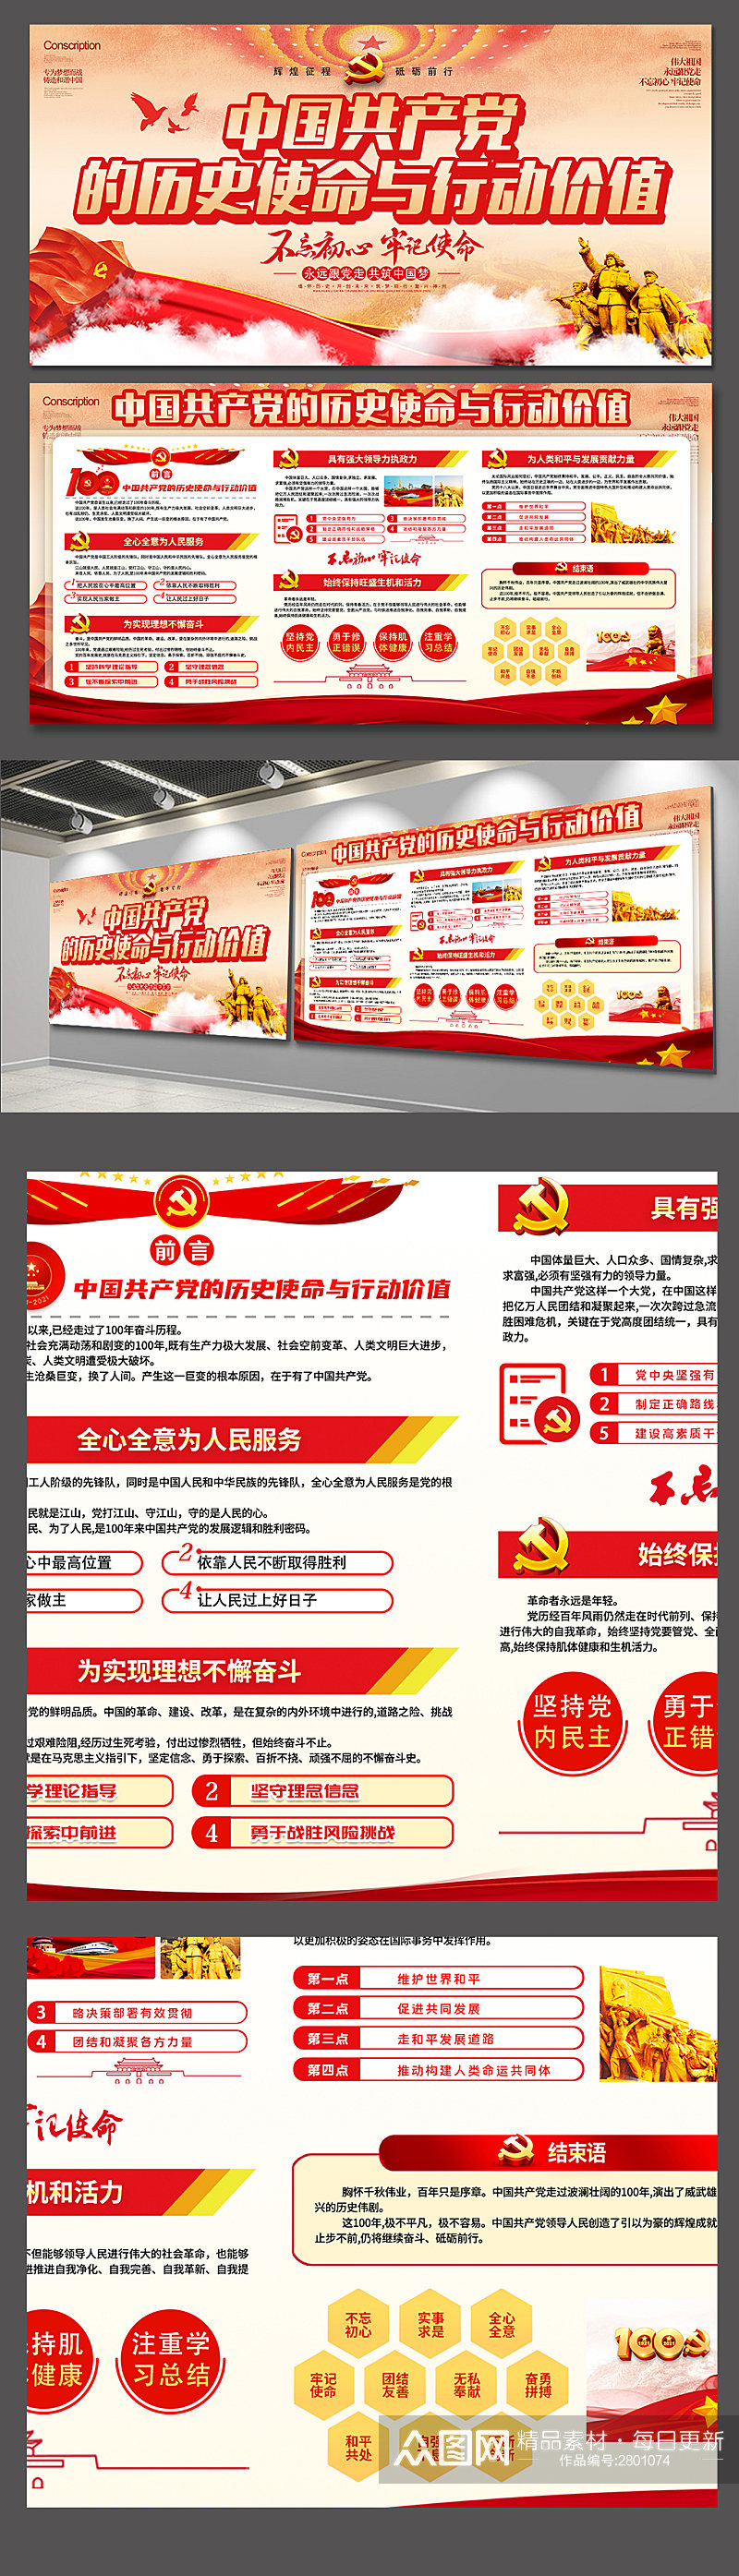 大气中国共产党的历史使命与行动价值展板素材